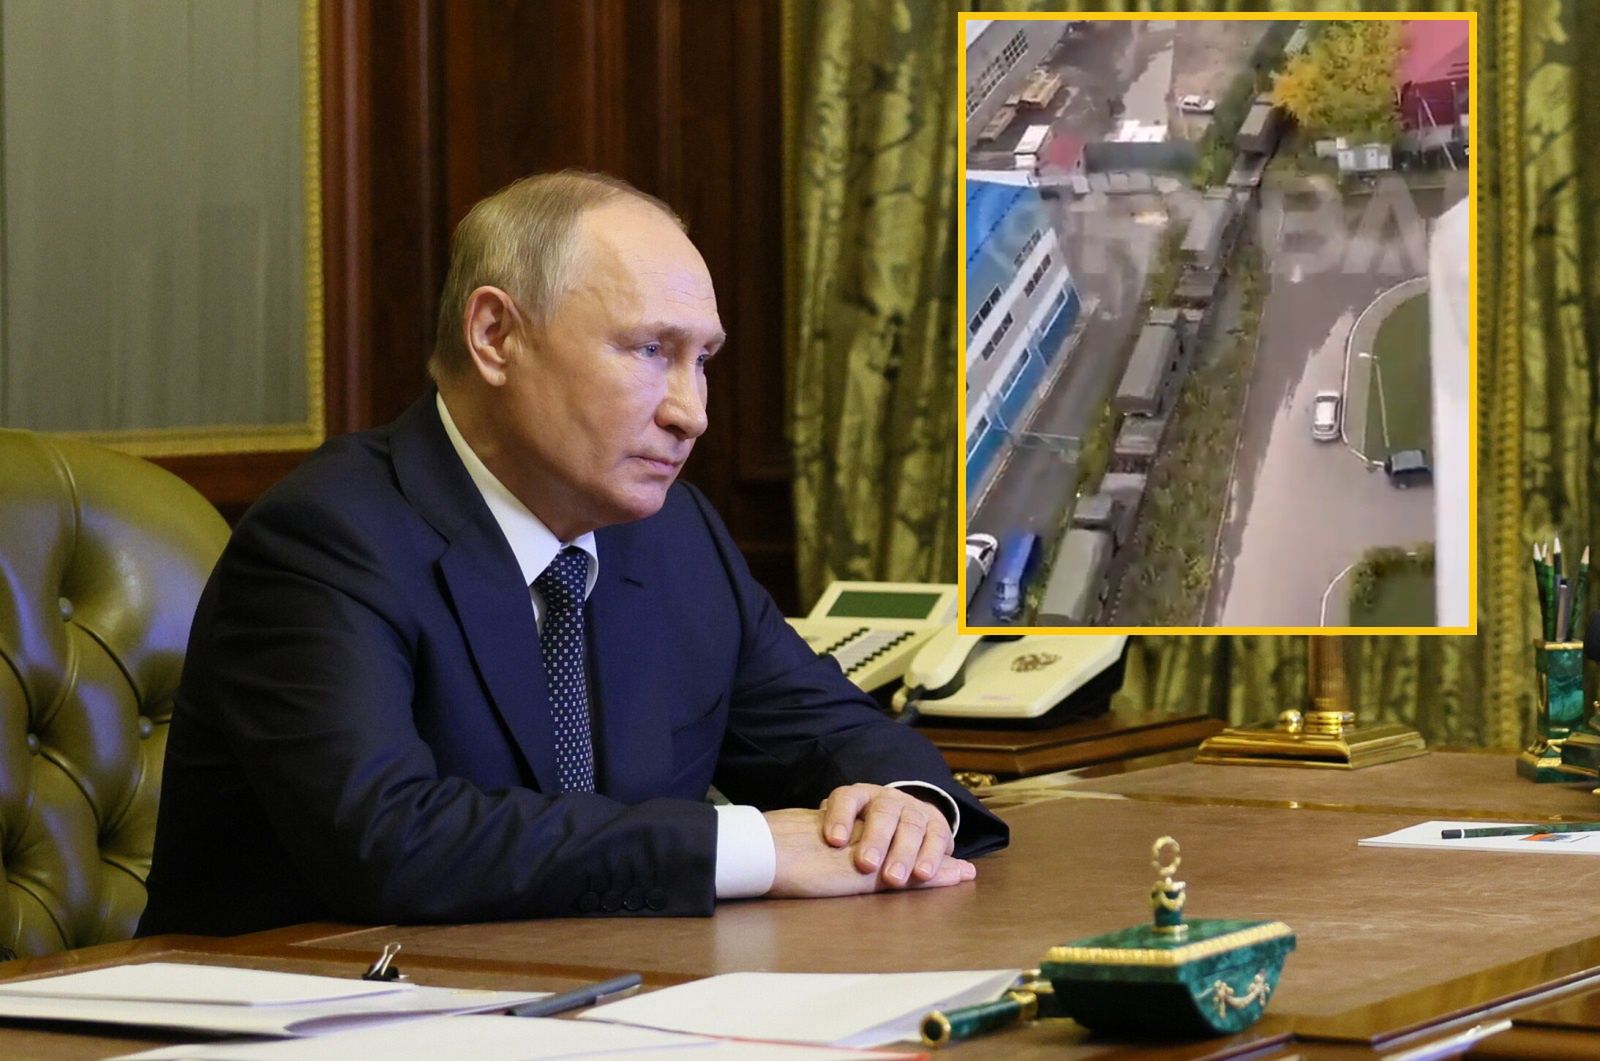 Putin straszy świat "nuklearnym pociągiem". Finowie uspokajają